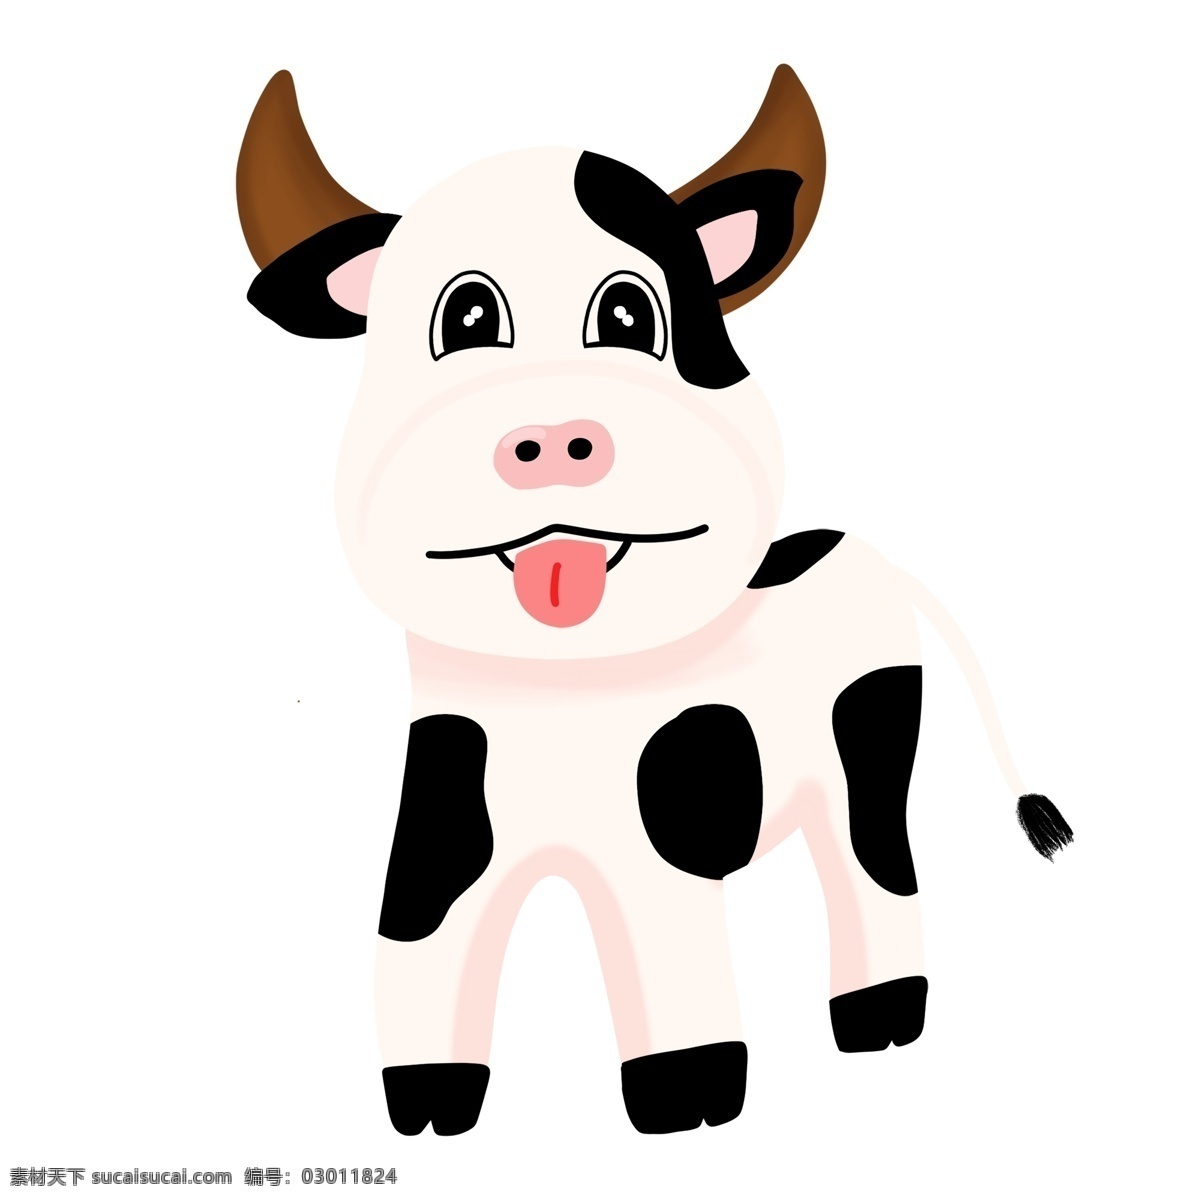 手绘 牧场 卡通 黑白 小 奶牛 可爱 动物 小动物